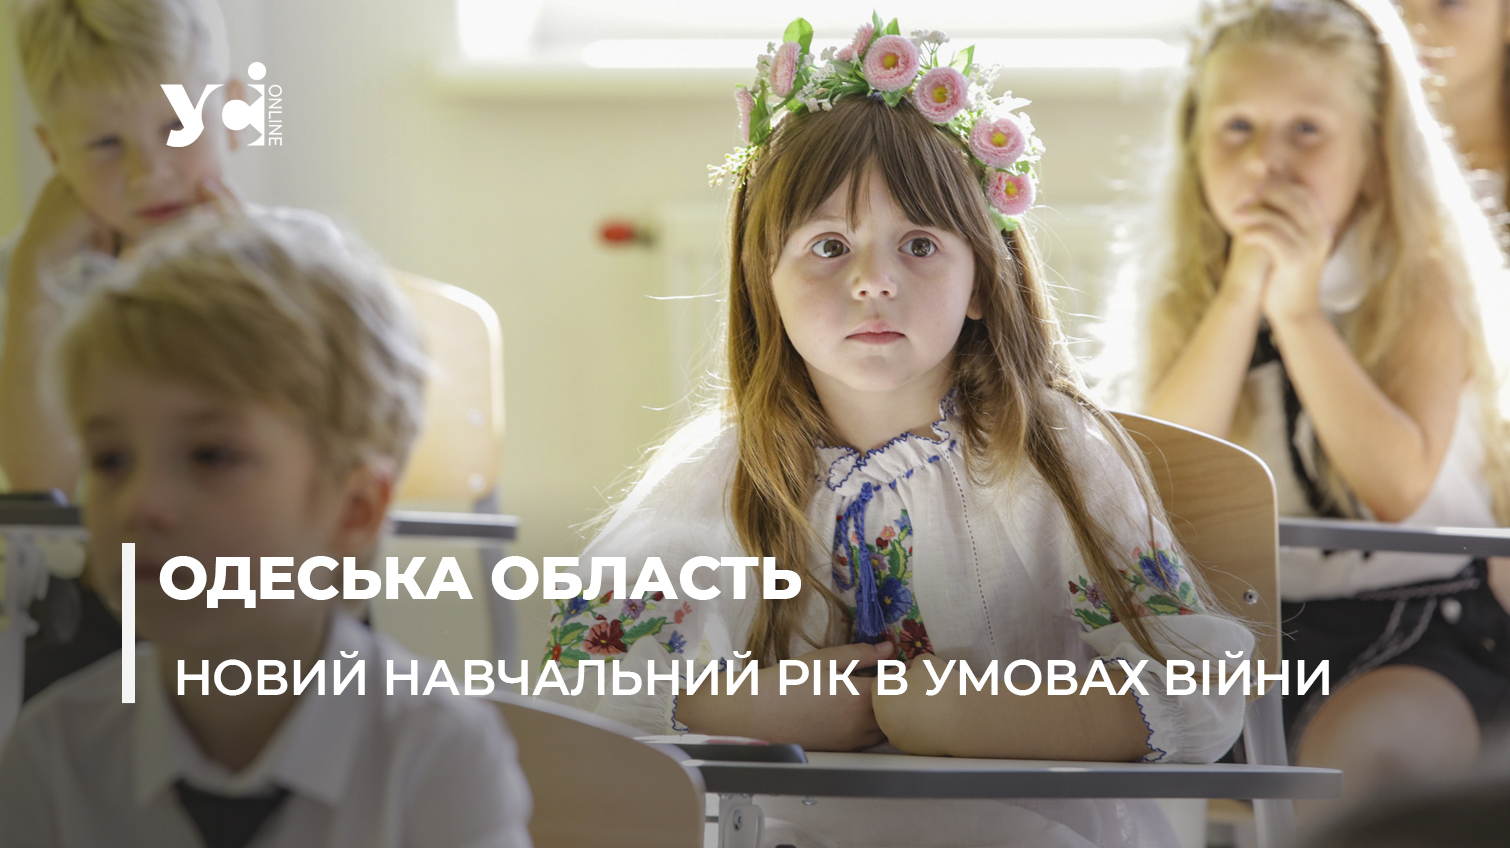 В Одеській області 88% шкіл готові працювати очно: деталі про новий навчальний рік «фото»